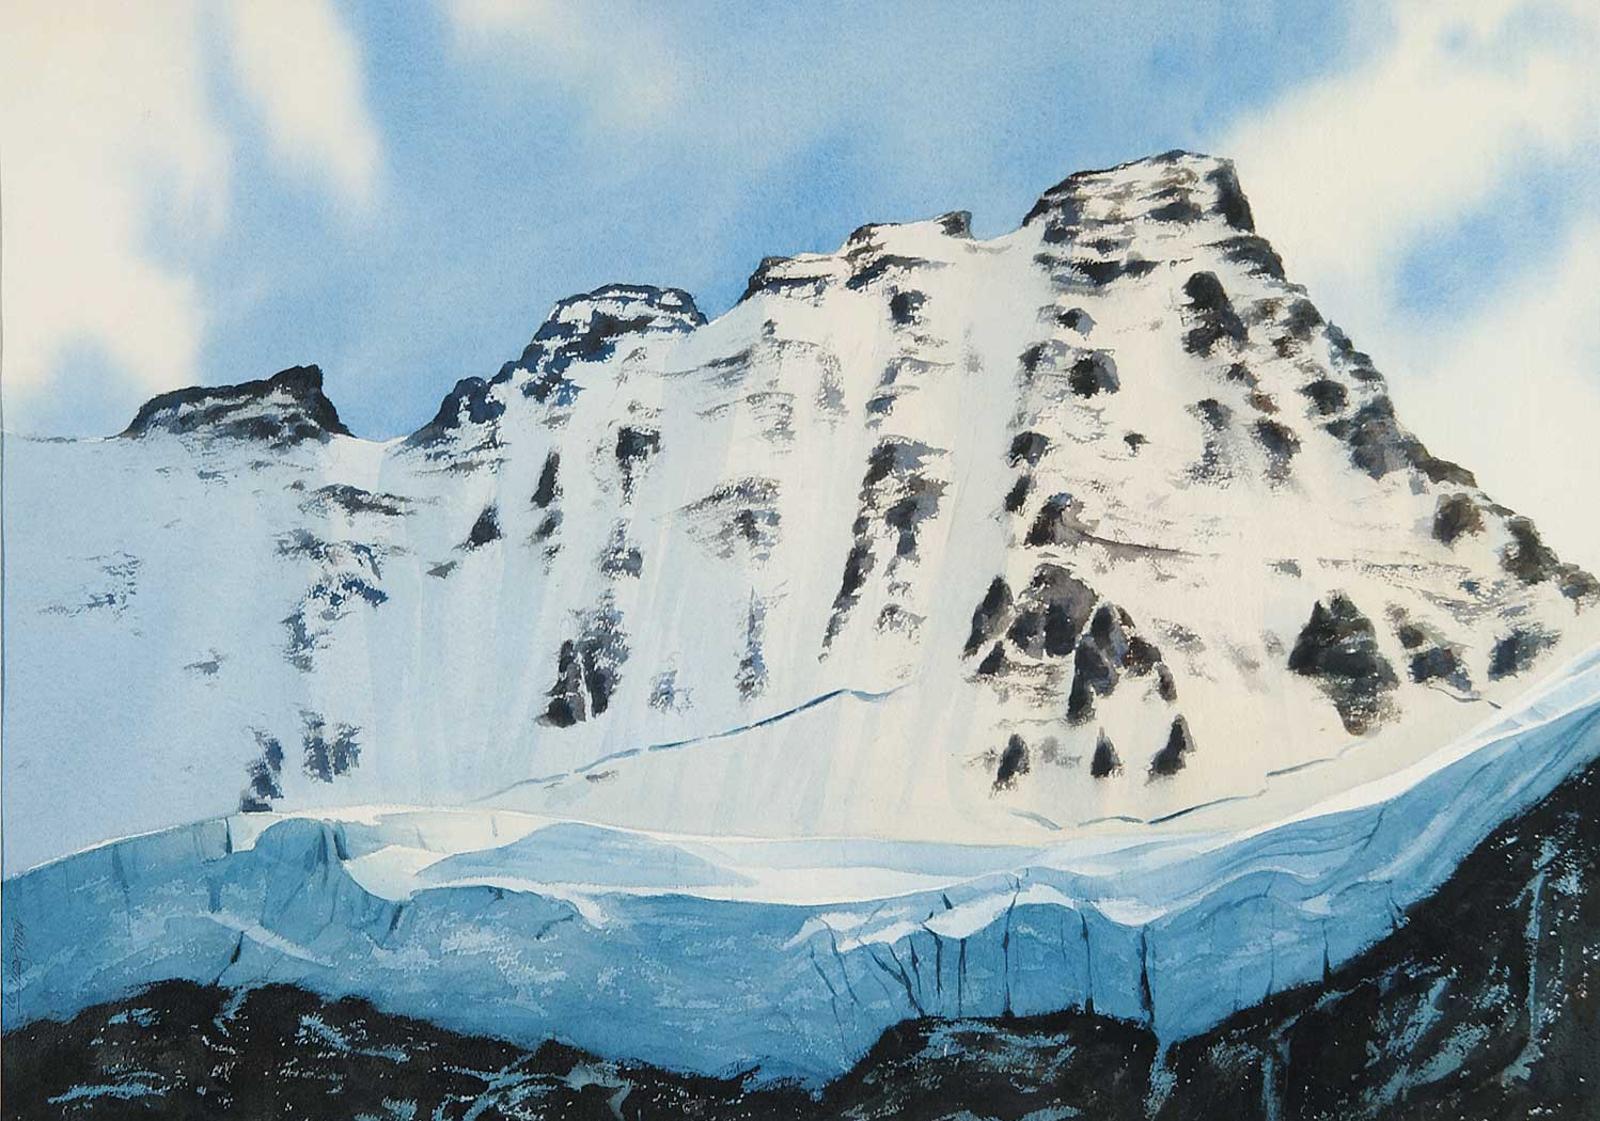 Beau Smith - Untitled - Sunrise on the Glacier